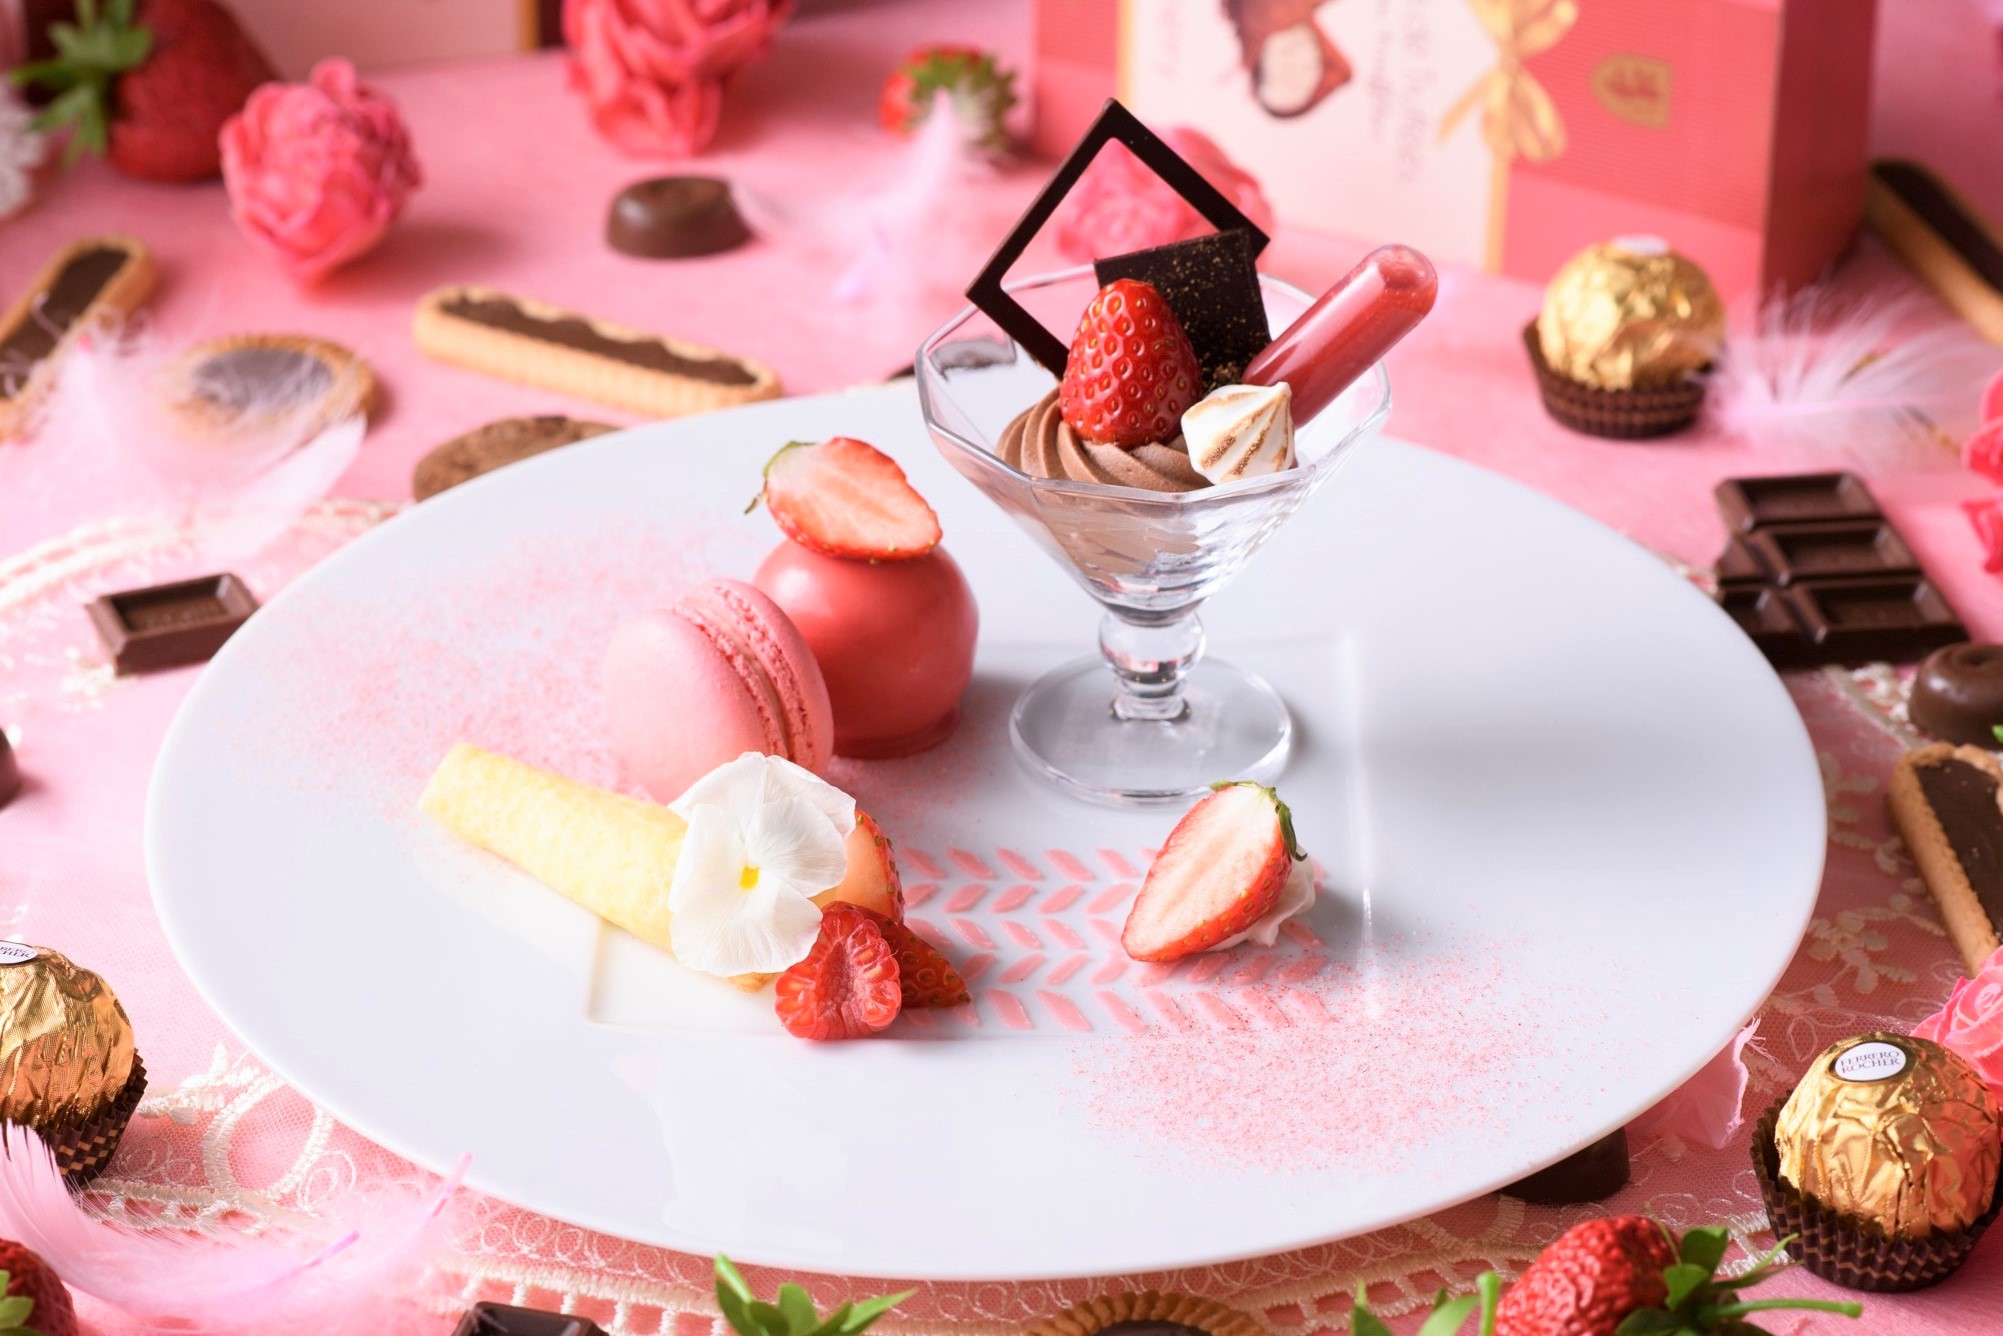 苺とチョコのスイーツフェア「Sweet Strawberry Valentine」がアニヴェルセルカフェ みなとみらい横浜にて期間限定開催中2